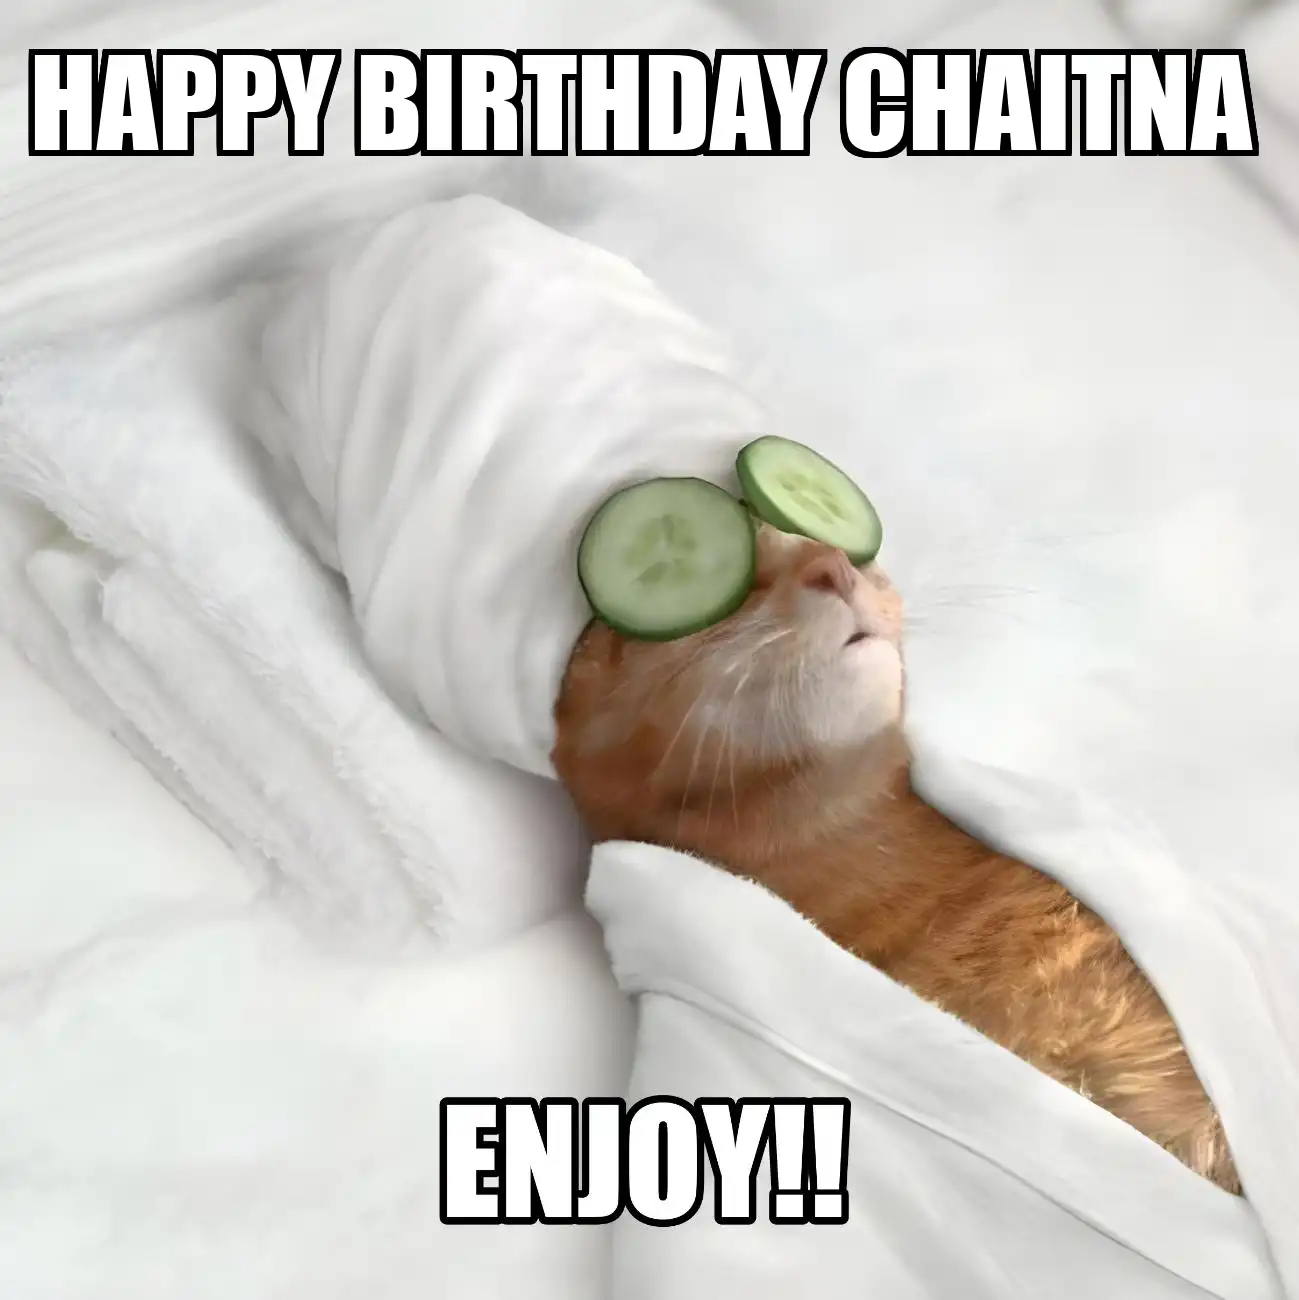 Happy Birthday Chaitna Enjoy Cat Meme